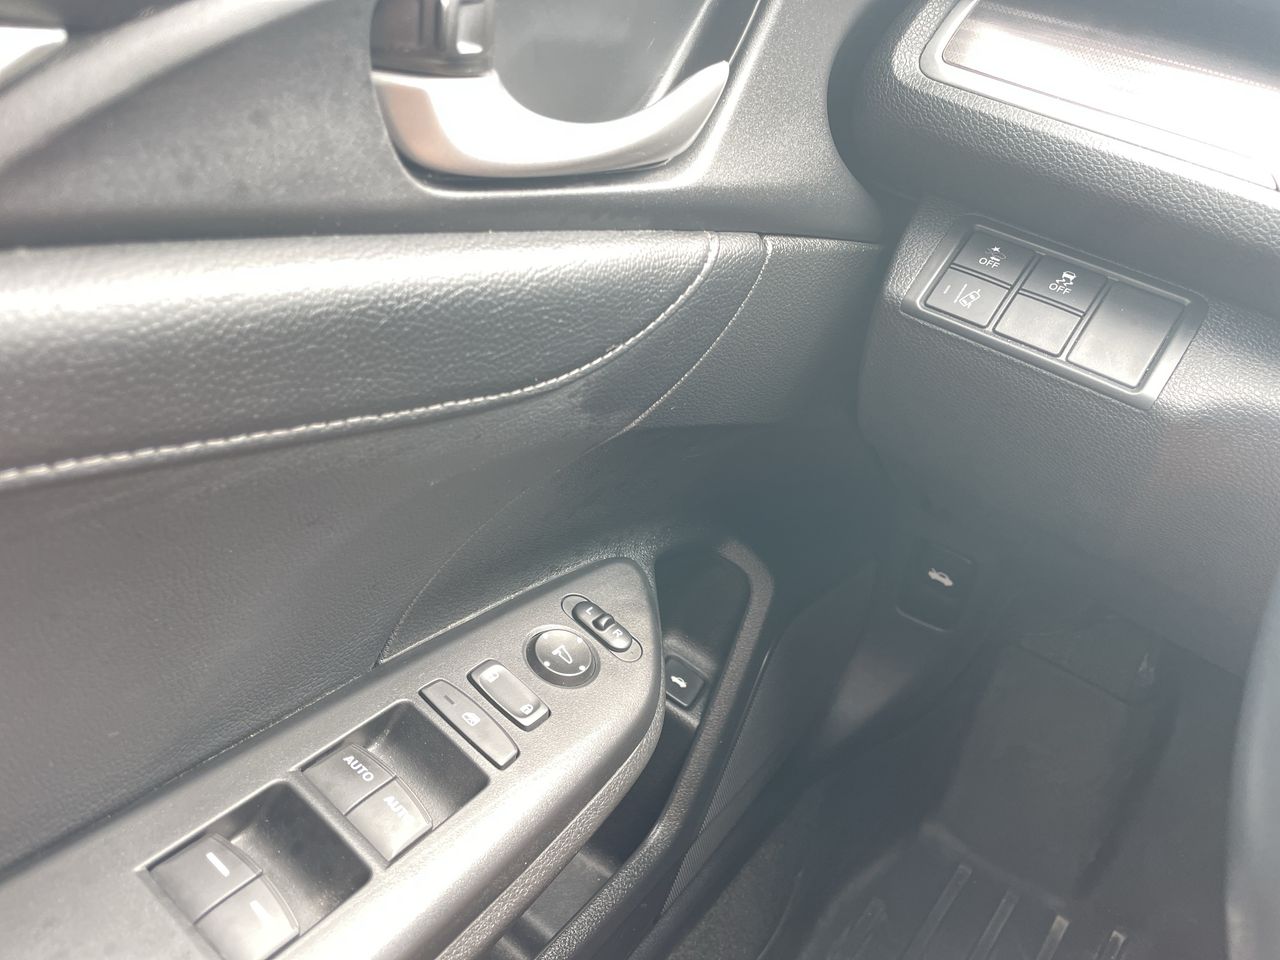 2019 Honda Civic Sedan - P21117 Full Image 13